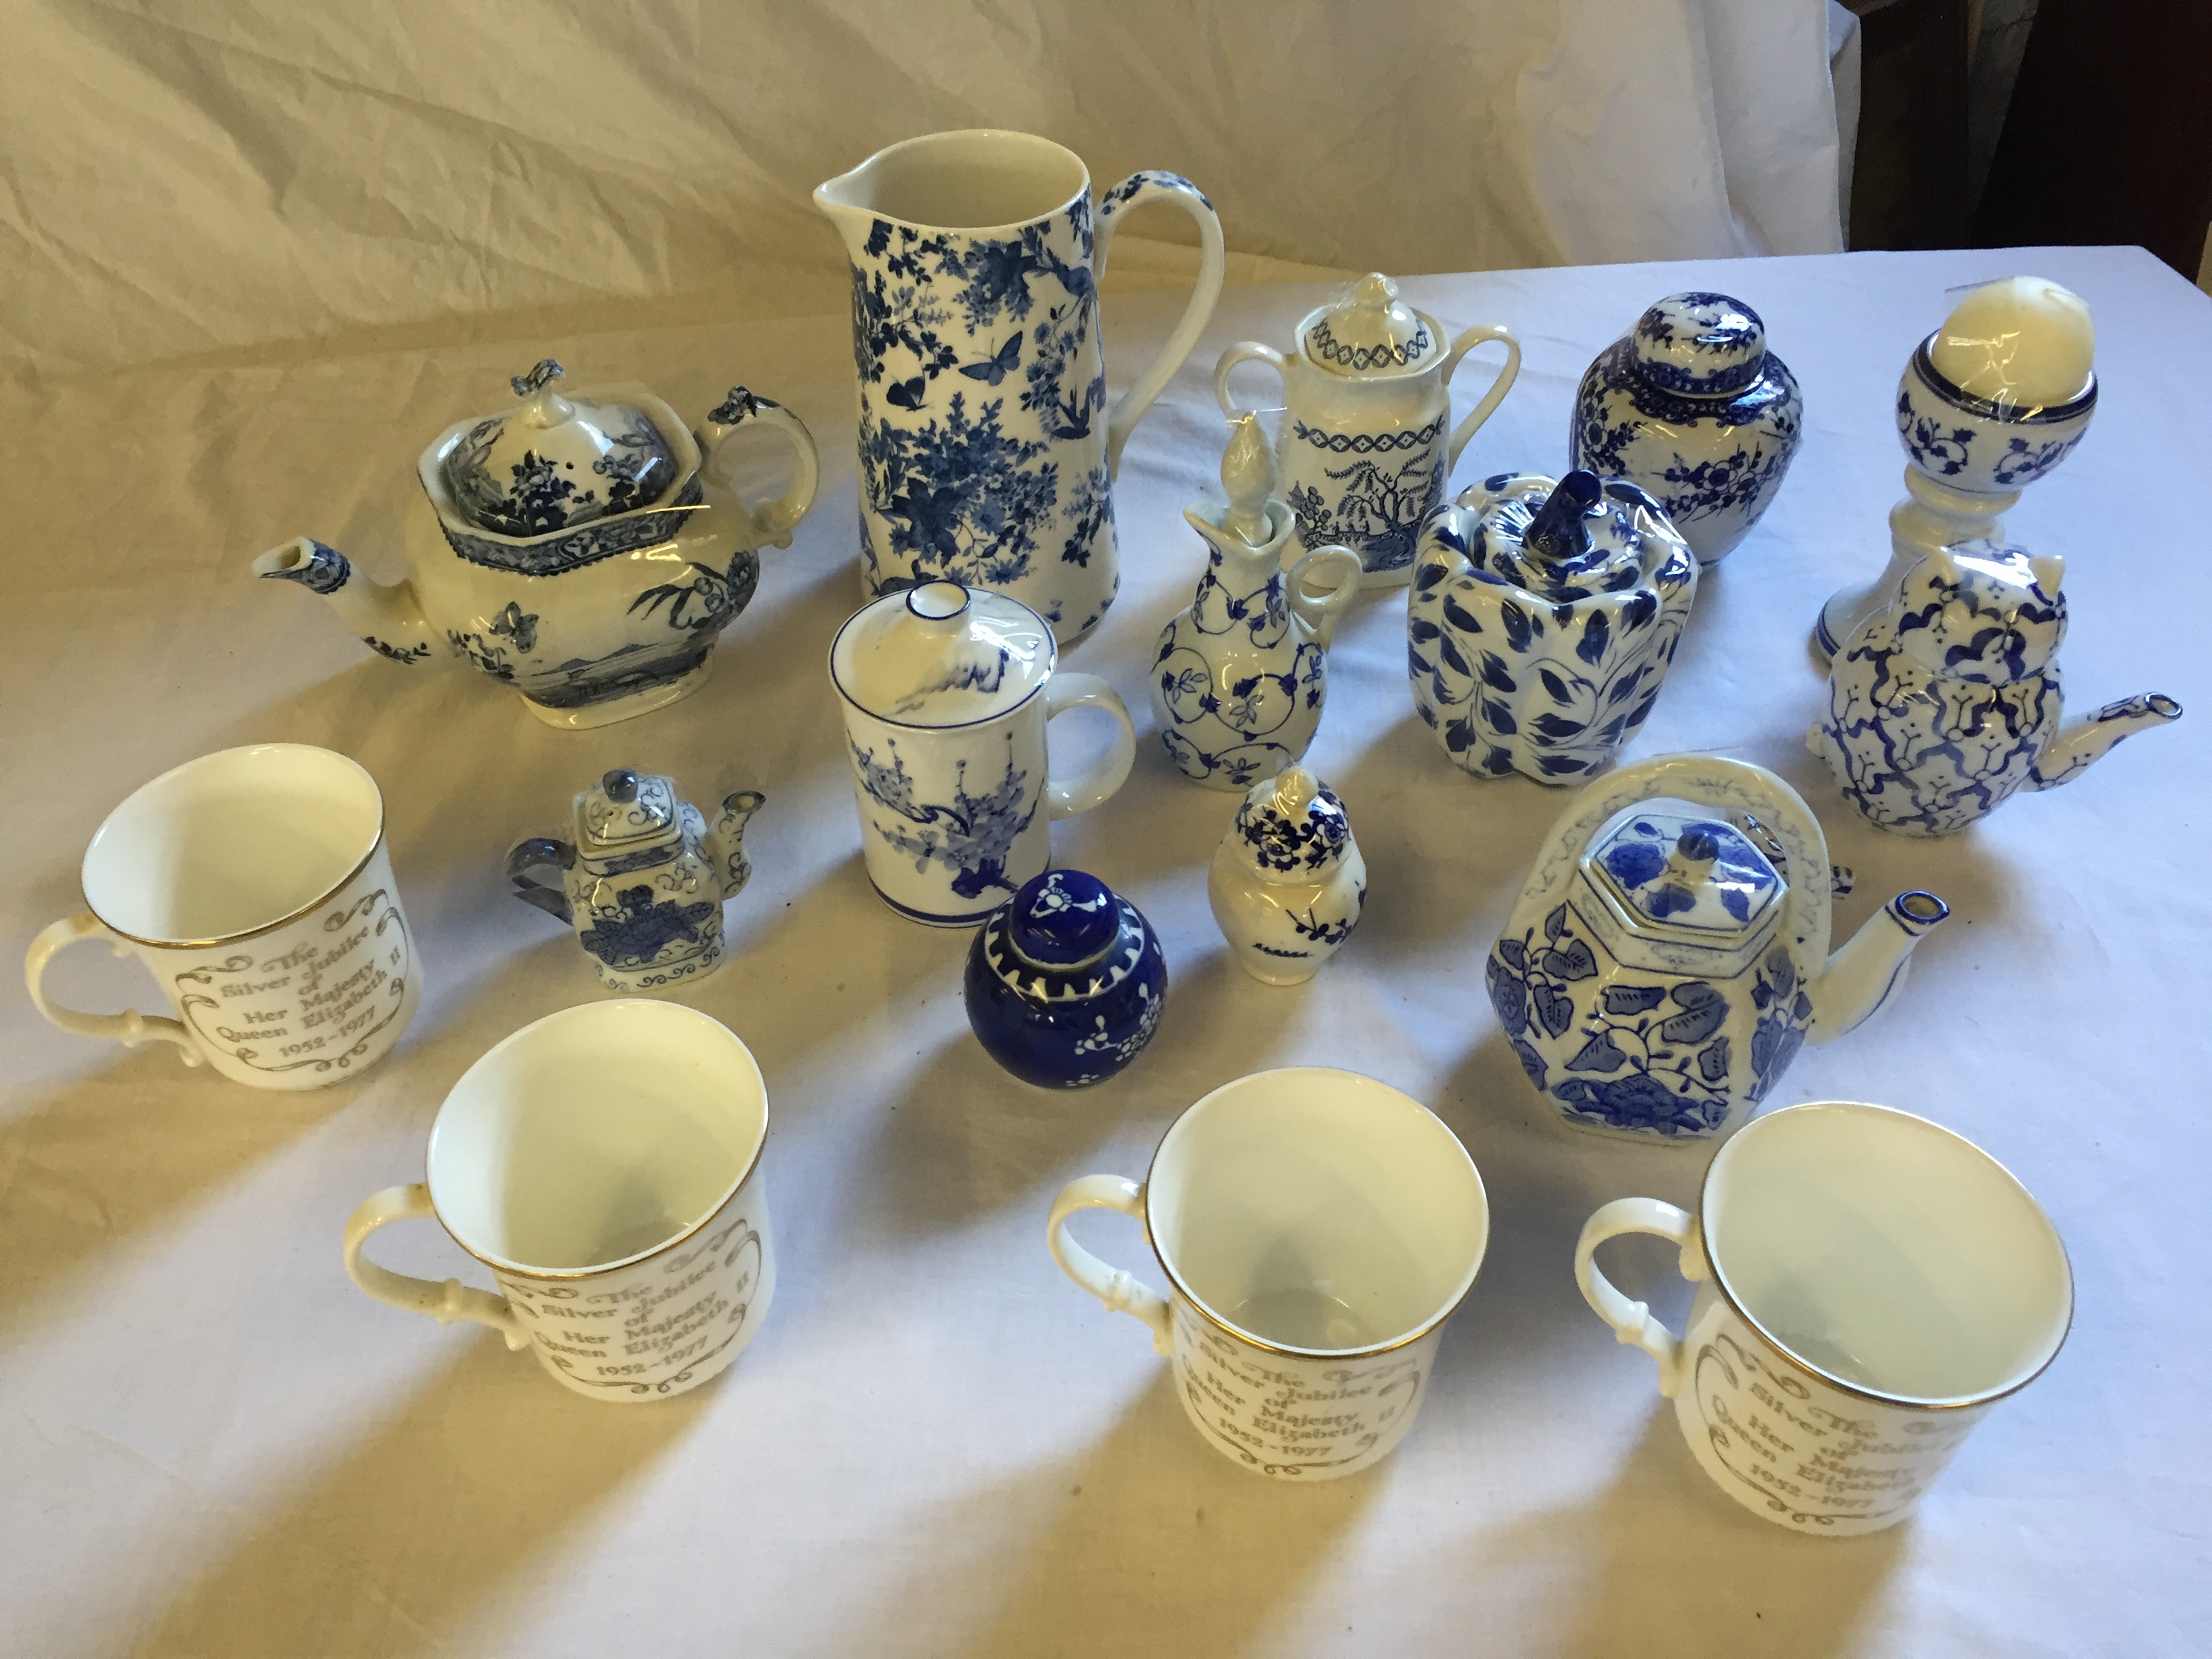 Blue and white ceramics including commemorative mugs.